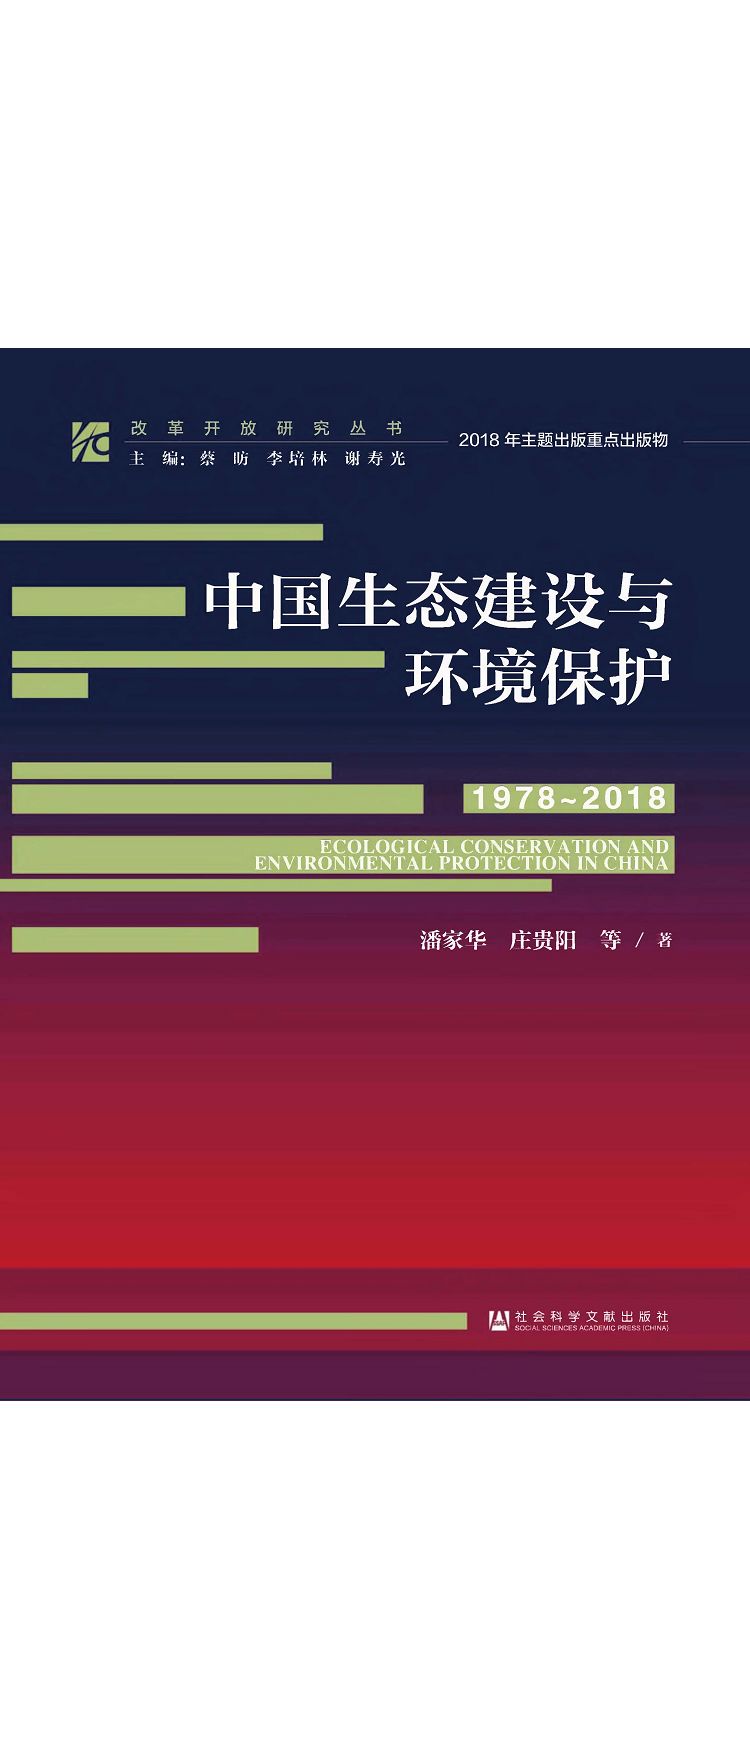 中國生態建設與環境保護(1978-2018) 